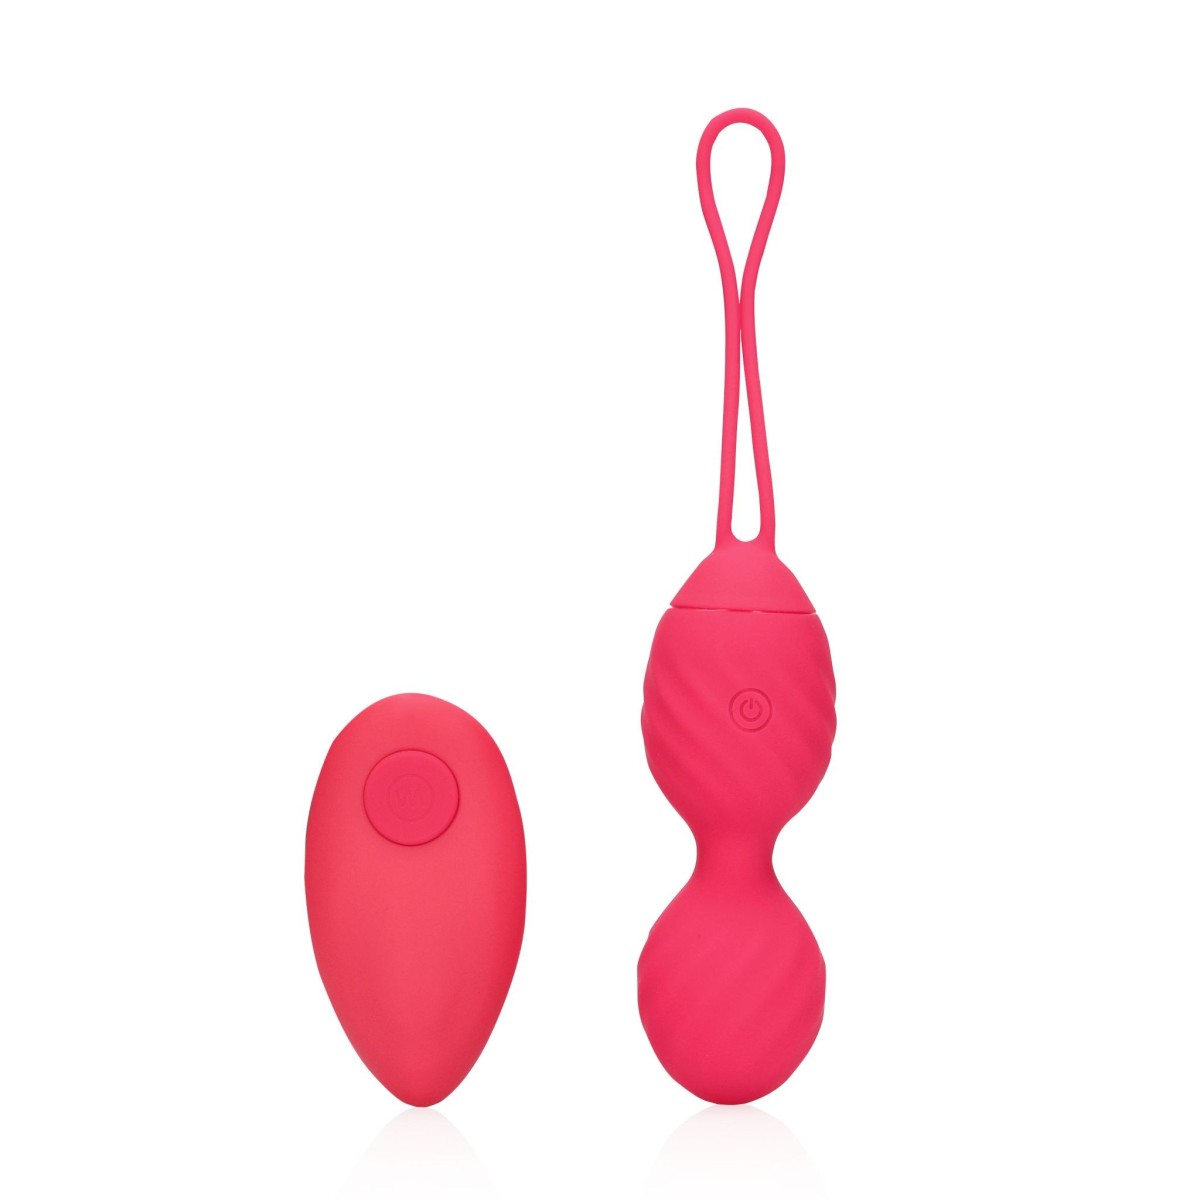 Shots Loveline Vibrating Egg with Remote Control Strawberry Red, silikónové vibračné vajíčko s diaľkovým ovládaním